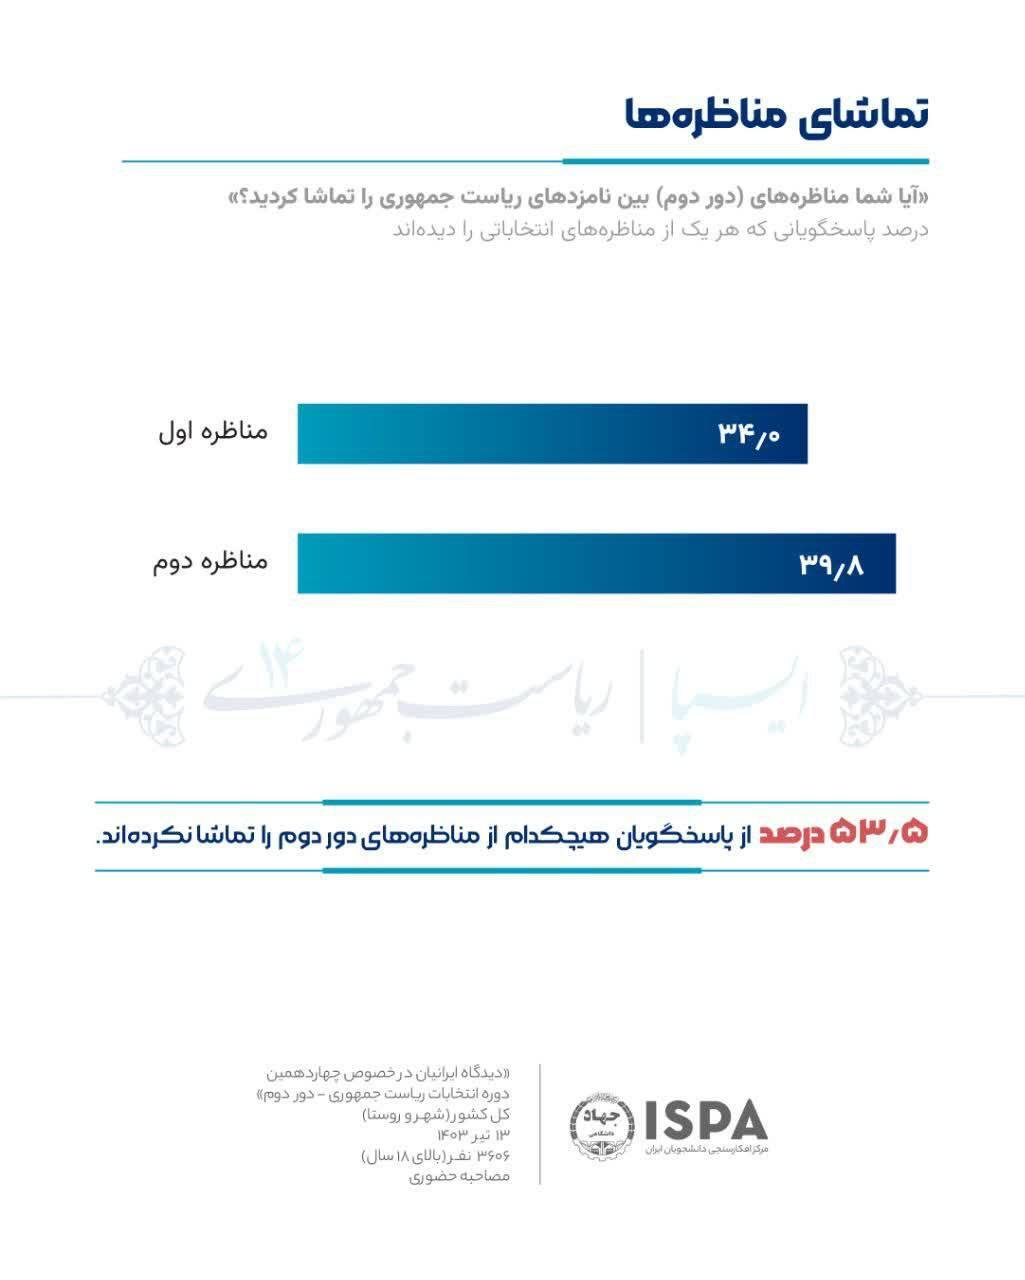 آخرین نظرسنجی ایسپا درباره میزان رأی پزشکیان و جلیلی در انتخابات